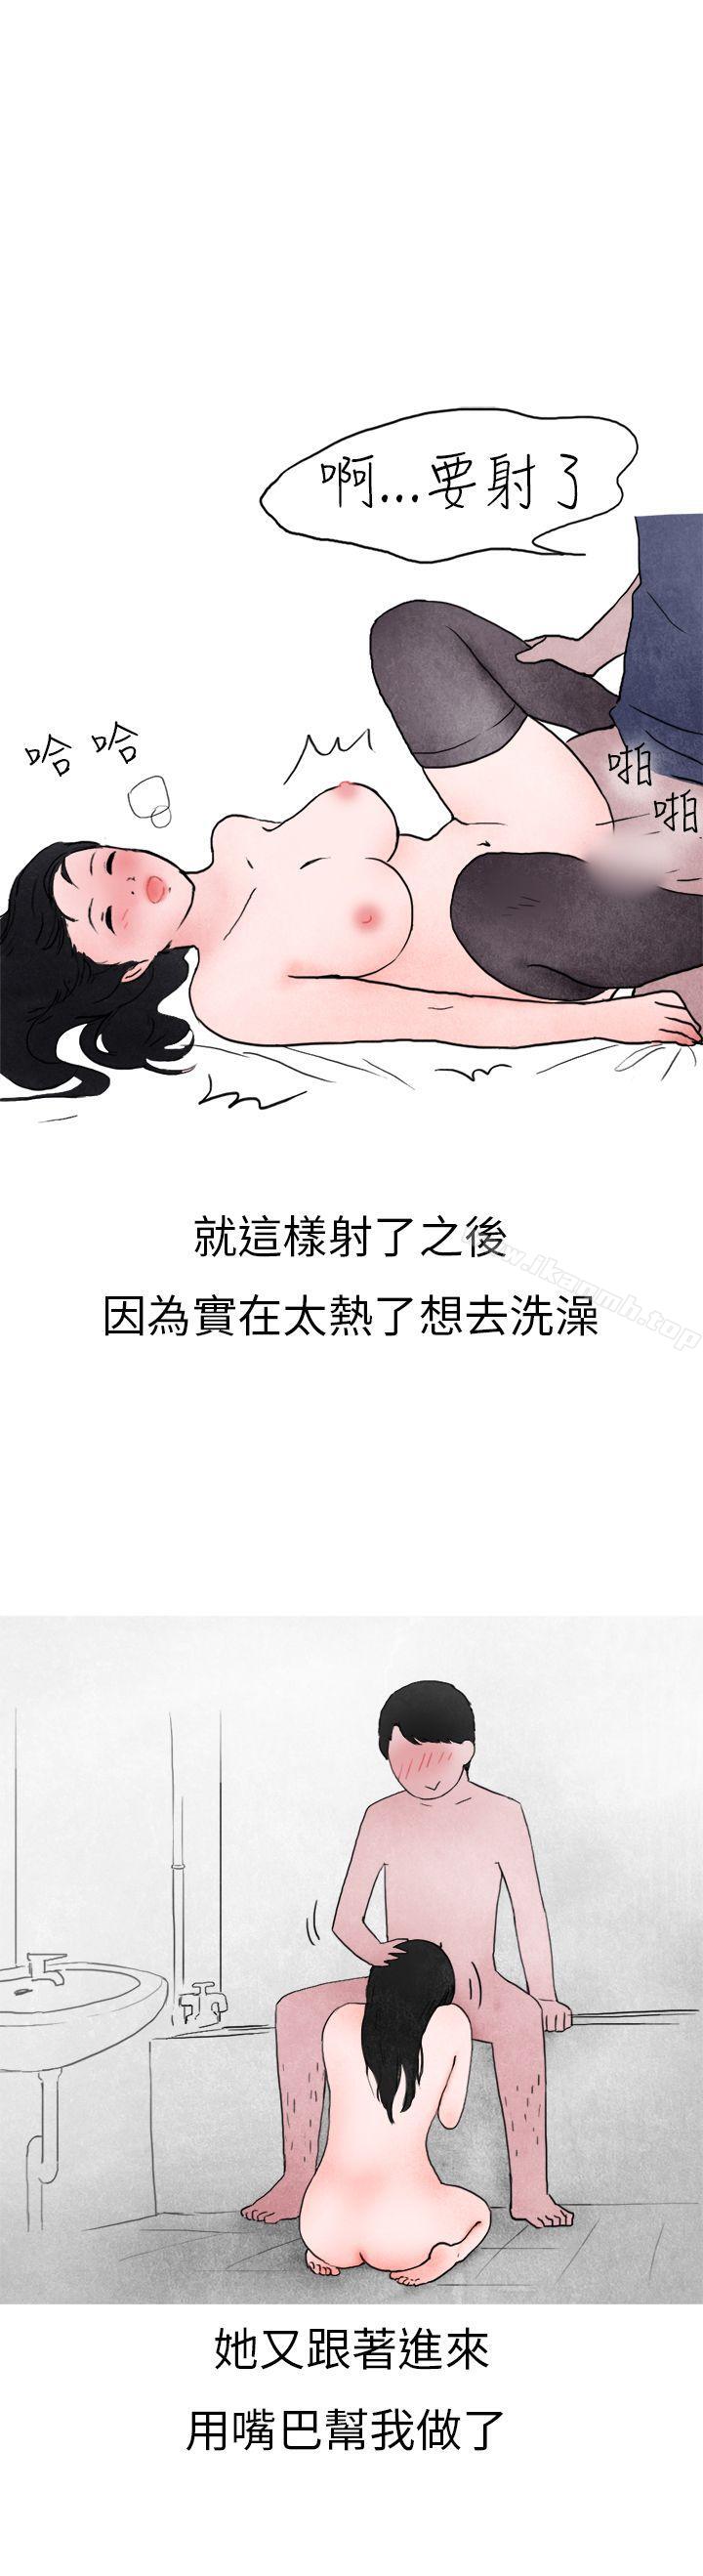 漫画韩国 秘密Story第二季   - 立即阅读 第二季 在夜店遇見的性感女神(下)第39漫画图片